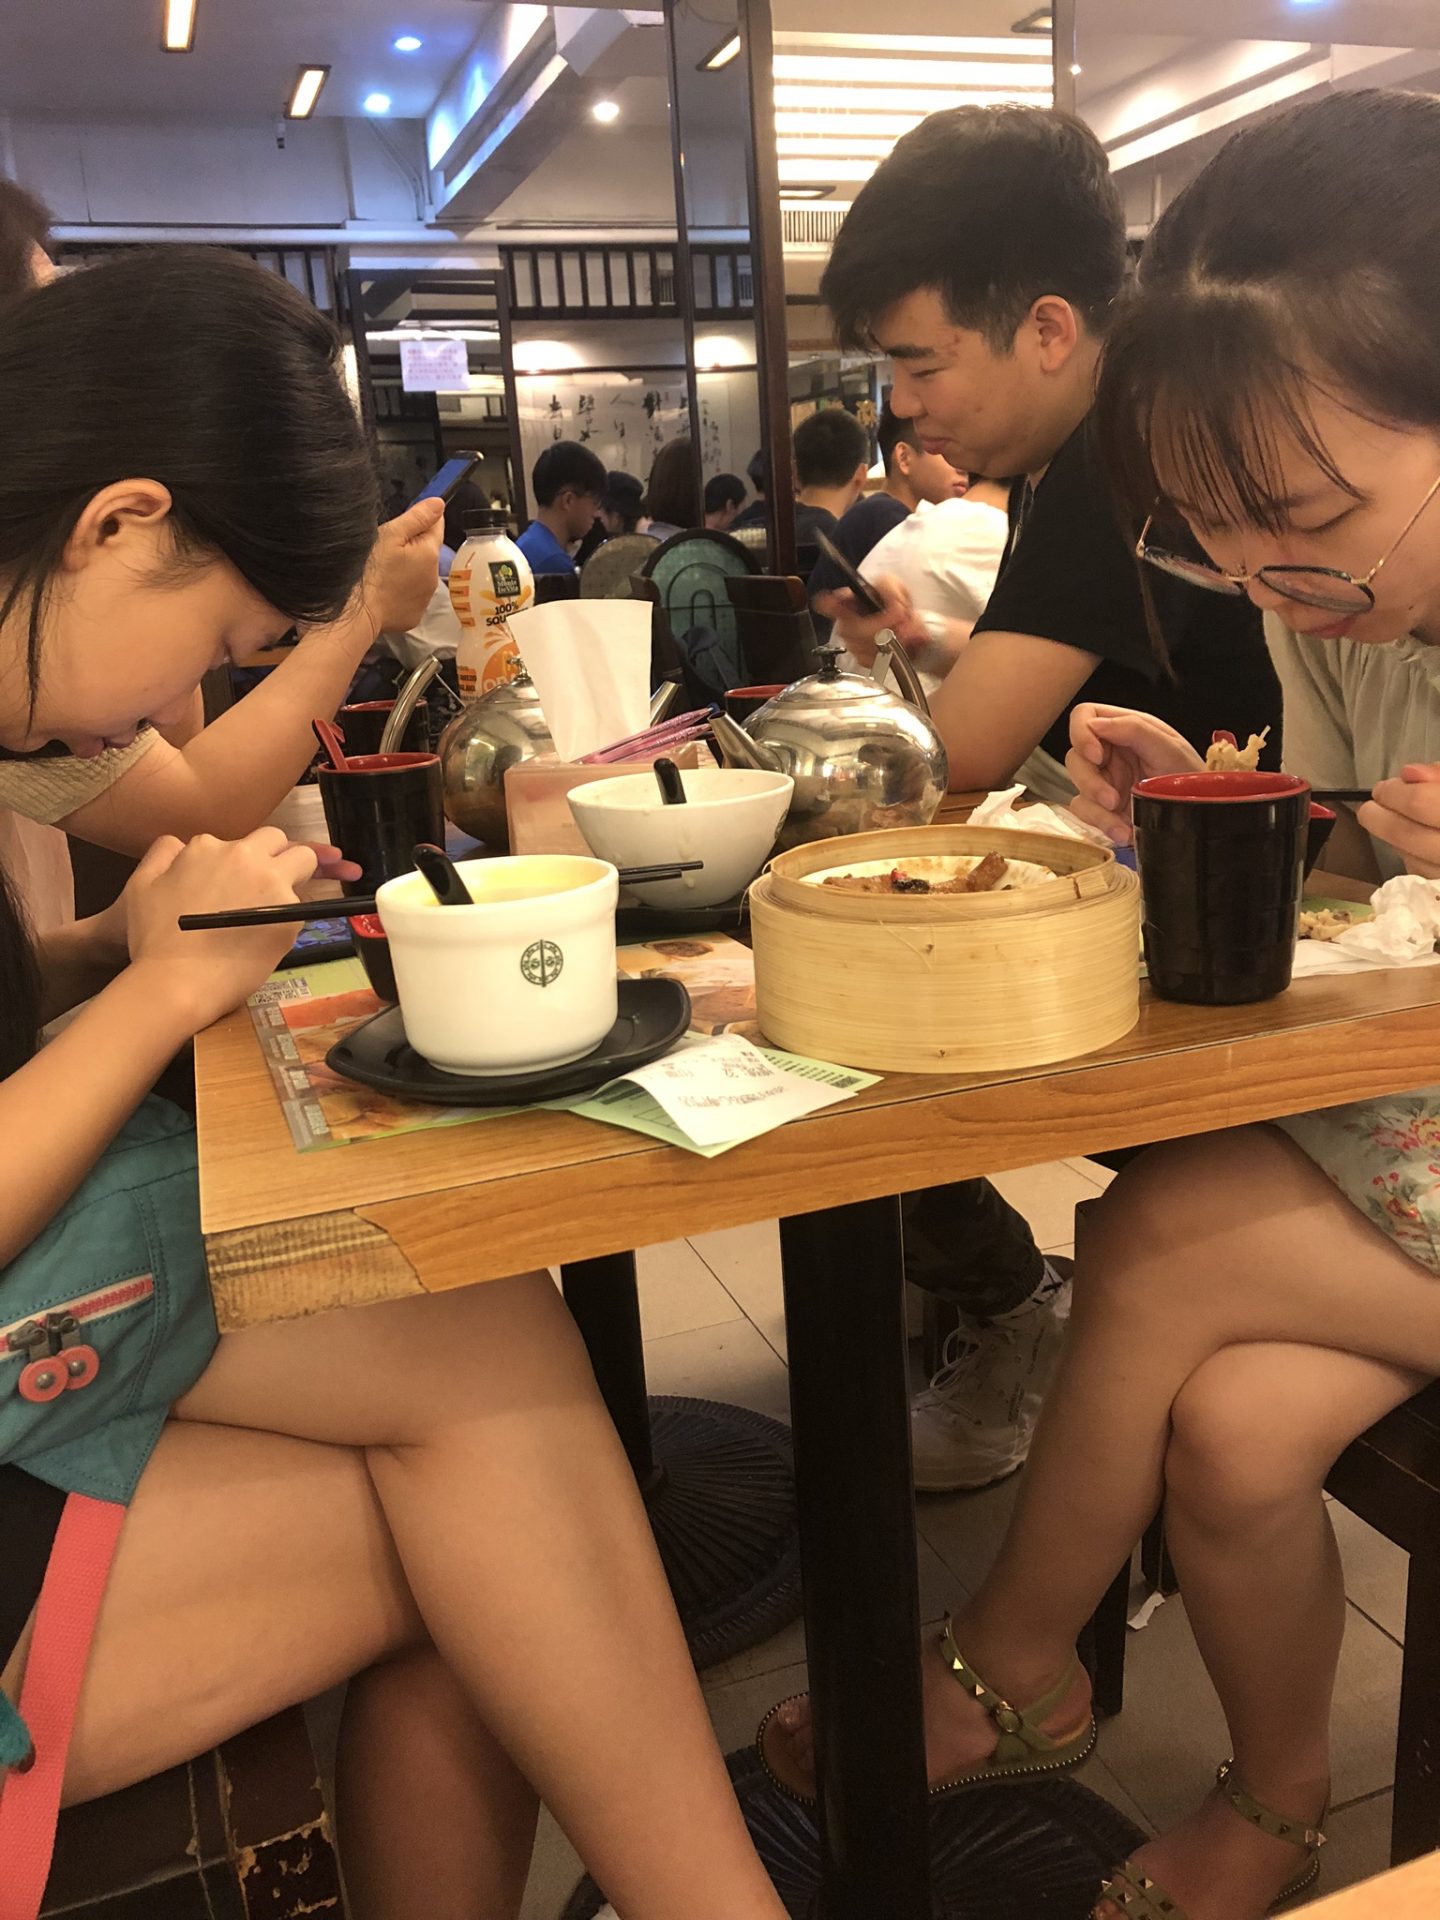 Diners at Tim Ho Wan, Hong Kong